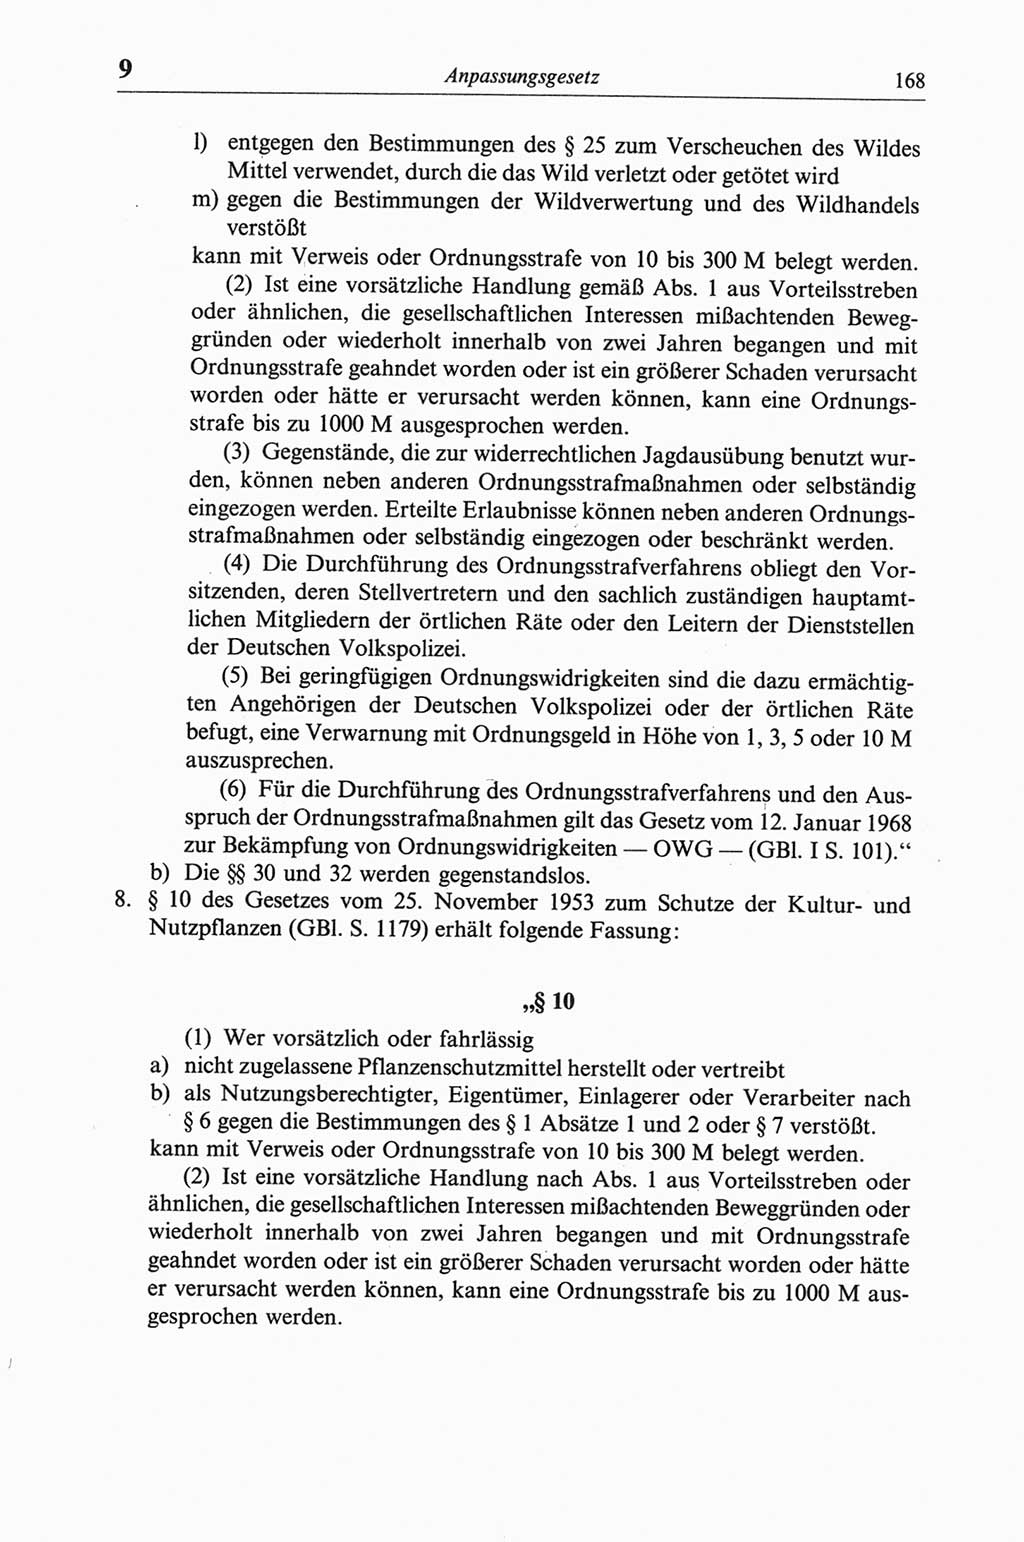 Strafgesetzbuch (StGB) der Deutschen Demokratischen Republik (DDR) und angrenzende Gesetze und Bestimmungen 1968, Seite 168 (StGB Ges. Best. DDR 1968, S. 168)